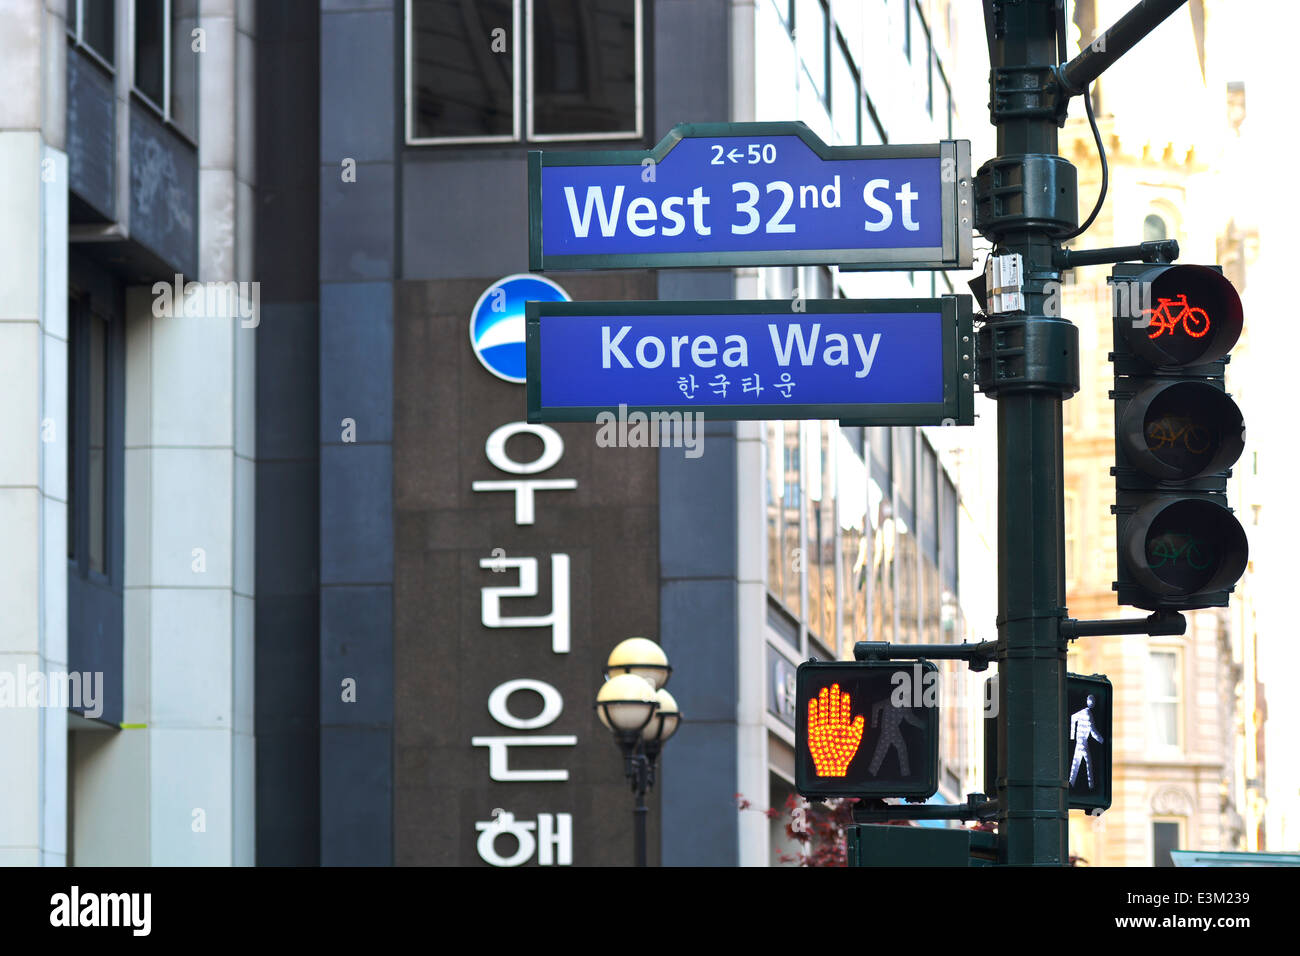 Les panneaux de rue à New York, NY, Manhattan, 32e Rue Ouest façon Corée Banque D'Images